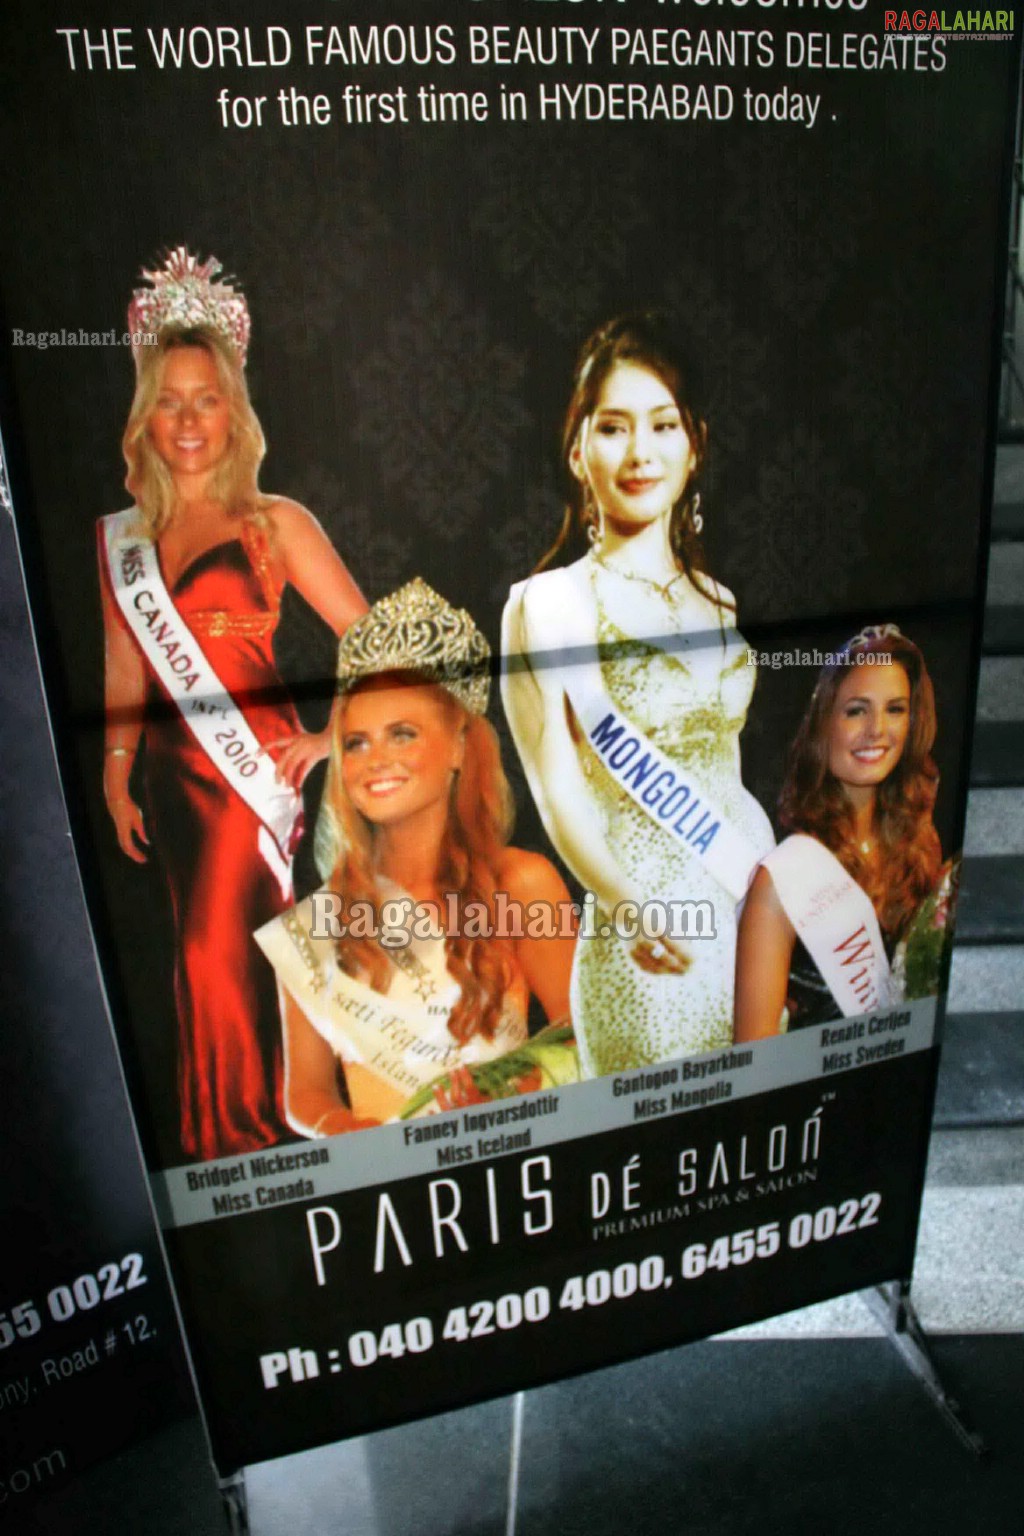 Paris De Salon - Premium SPA and Salon Launch